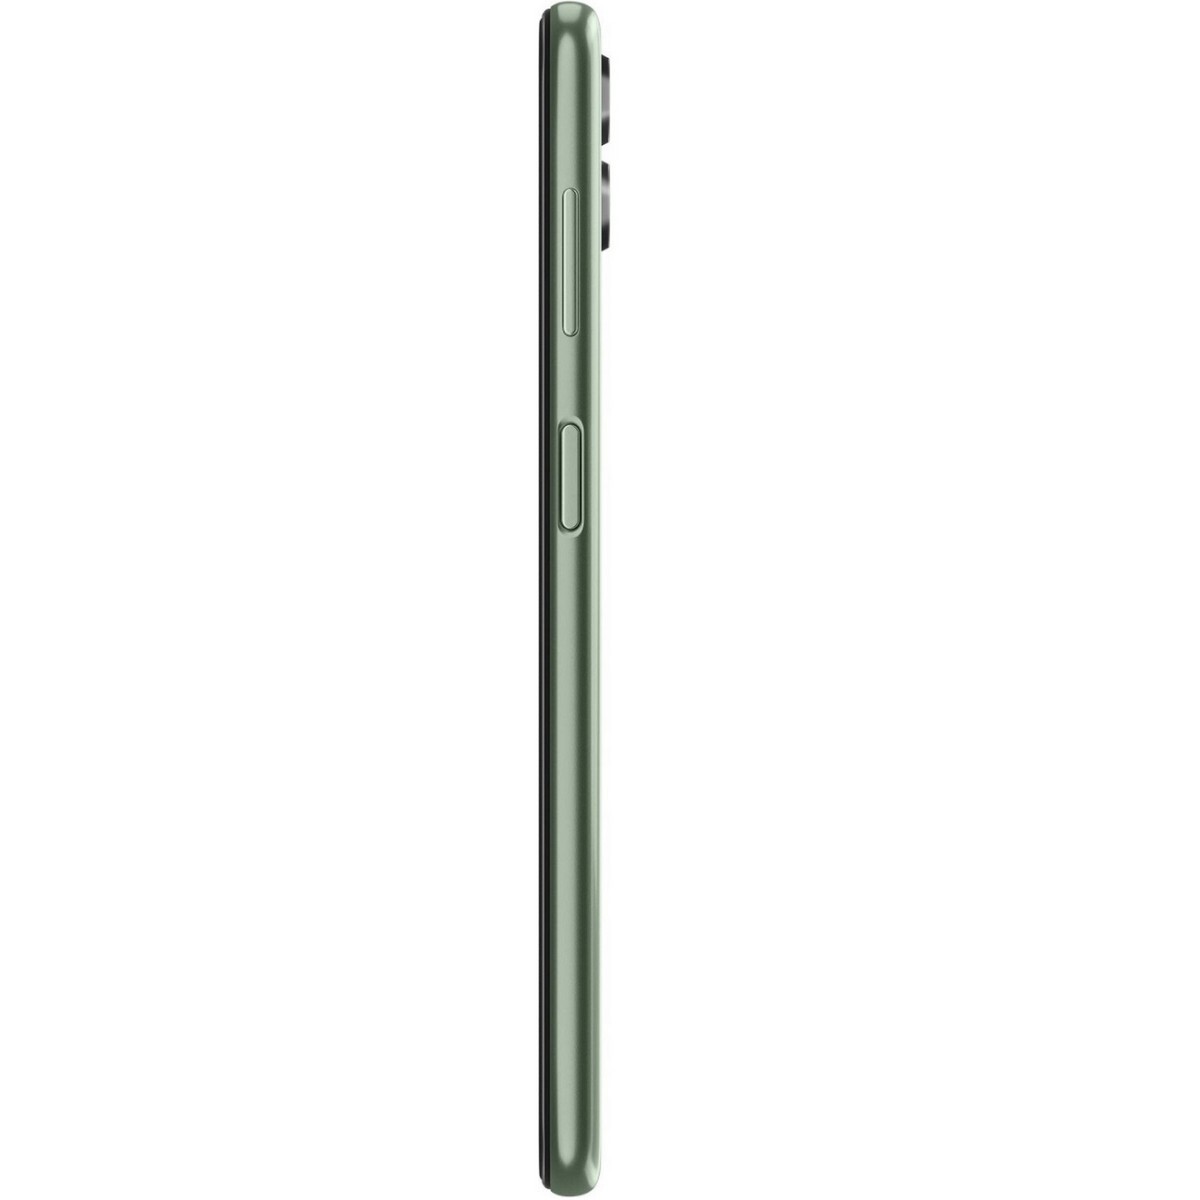 Samsung E146 F14 5G 4/128 GB GOAT Green